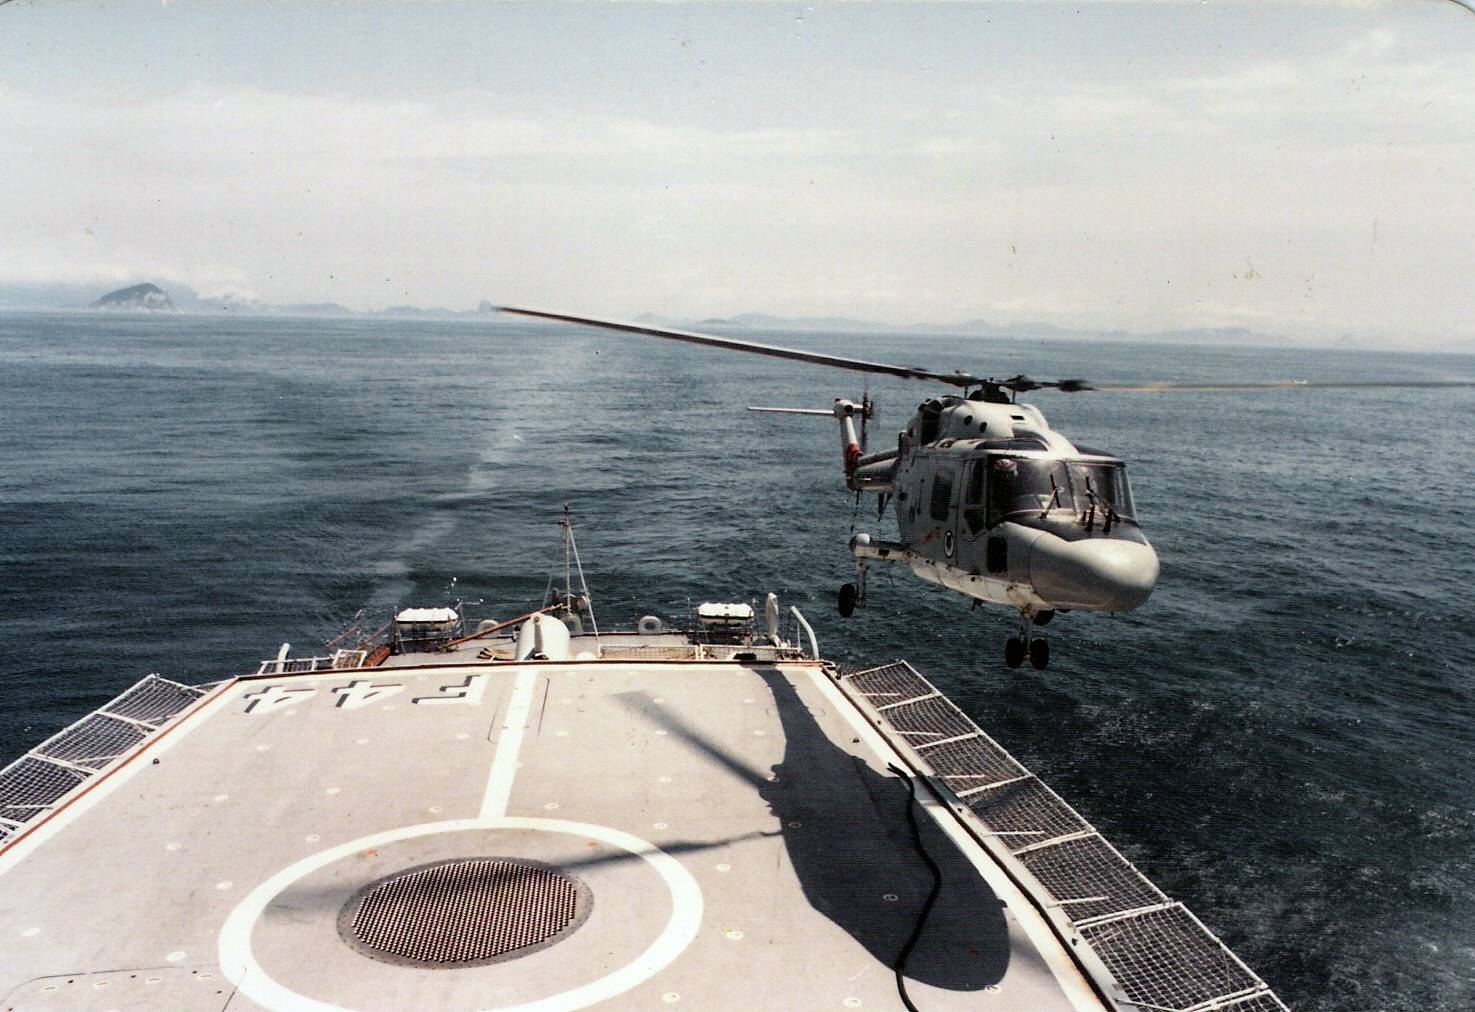 Recebendo um SAH-11 Lynx logo na saída do Rio de Janeiro em 21 de novembro de 1987. (foto: Coleção de Guilherme Wiltgen)